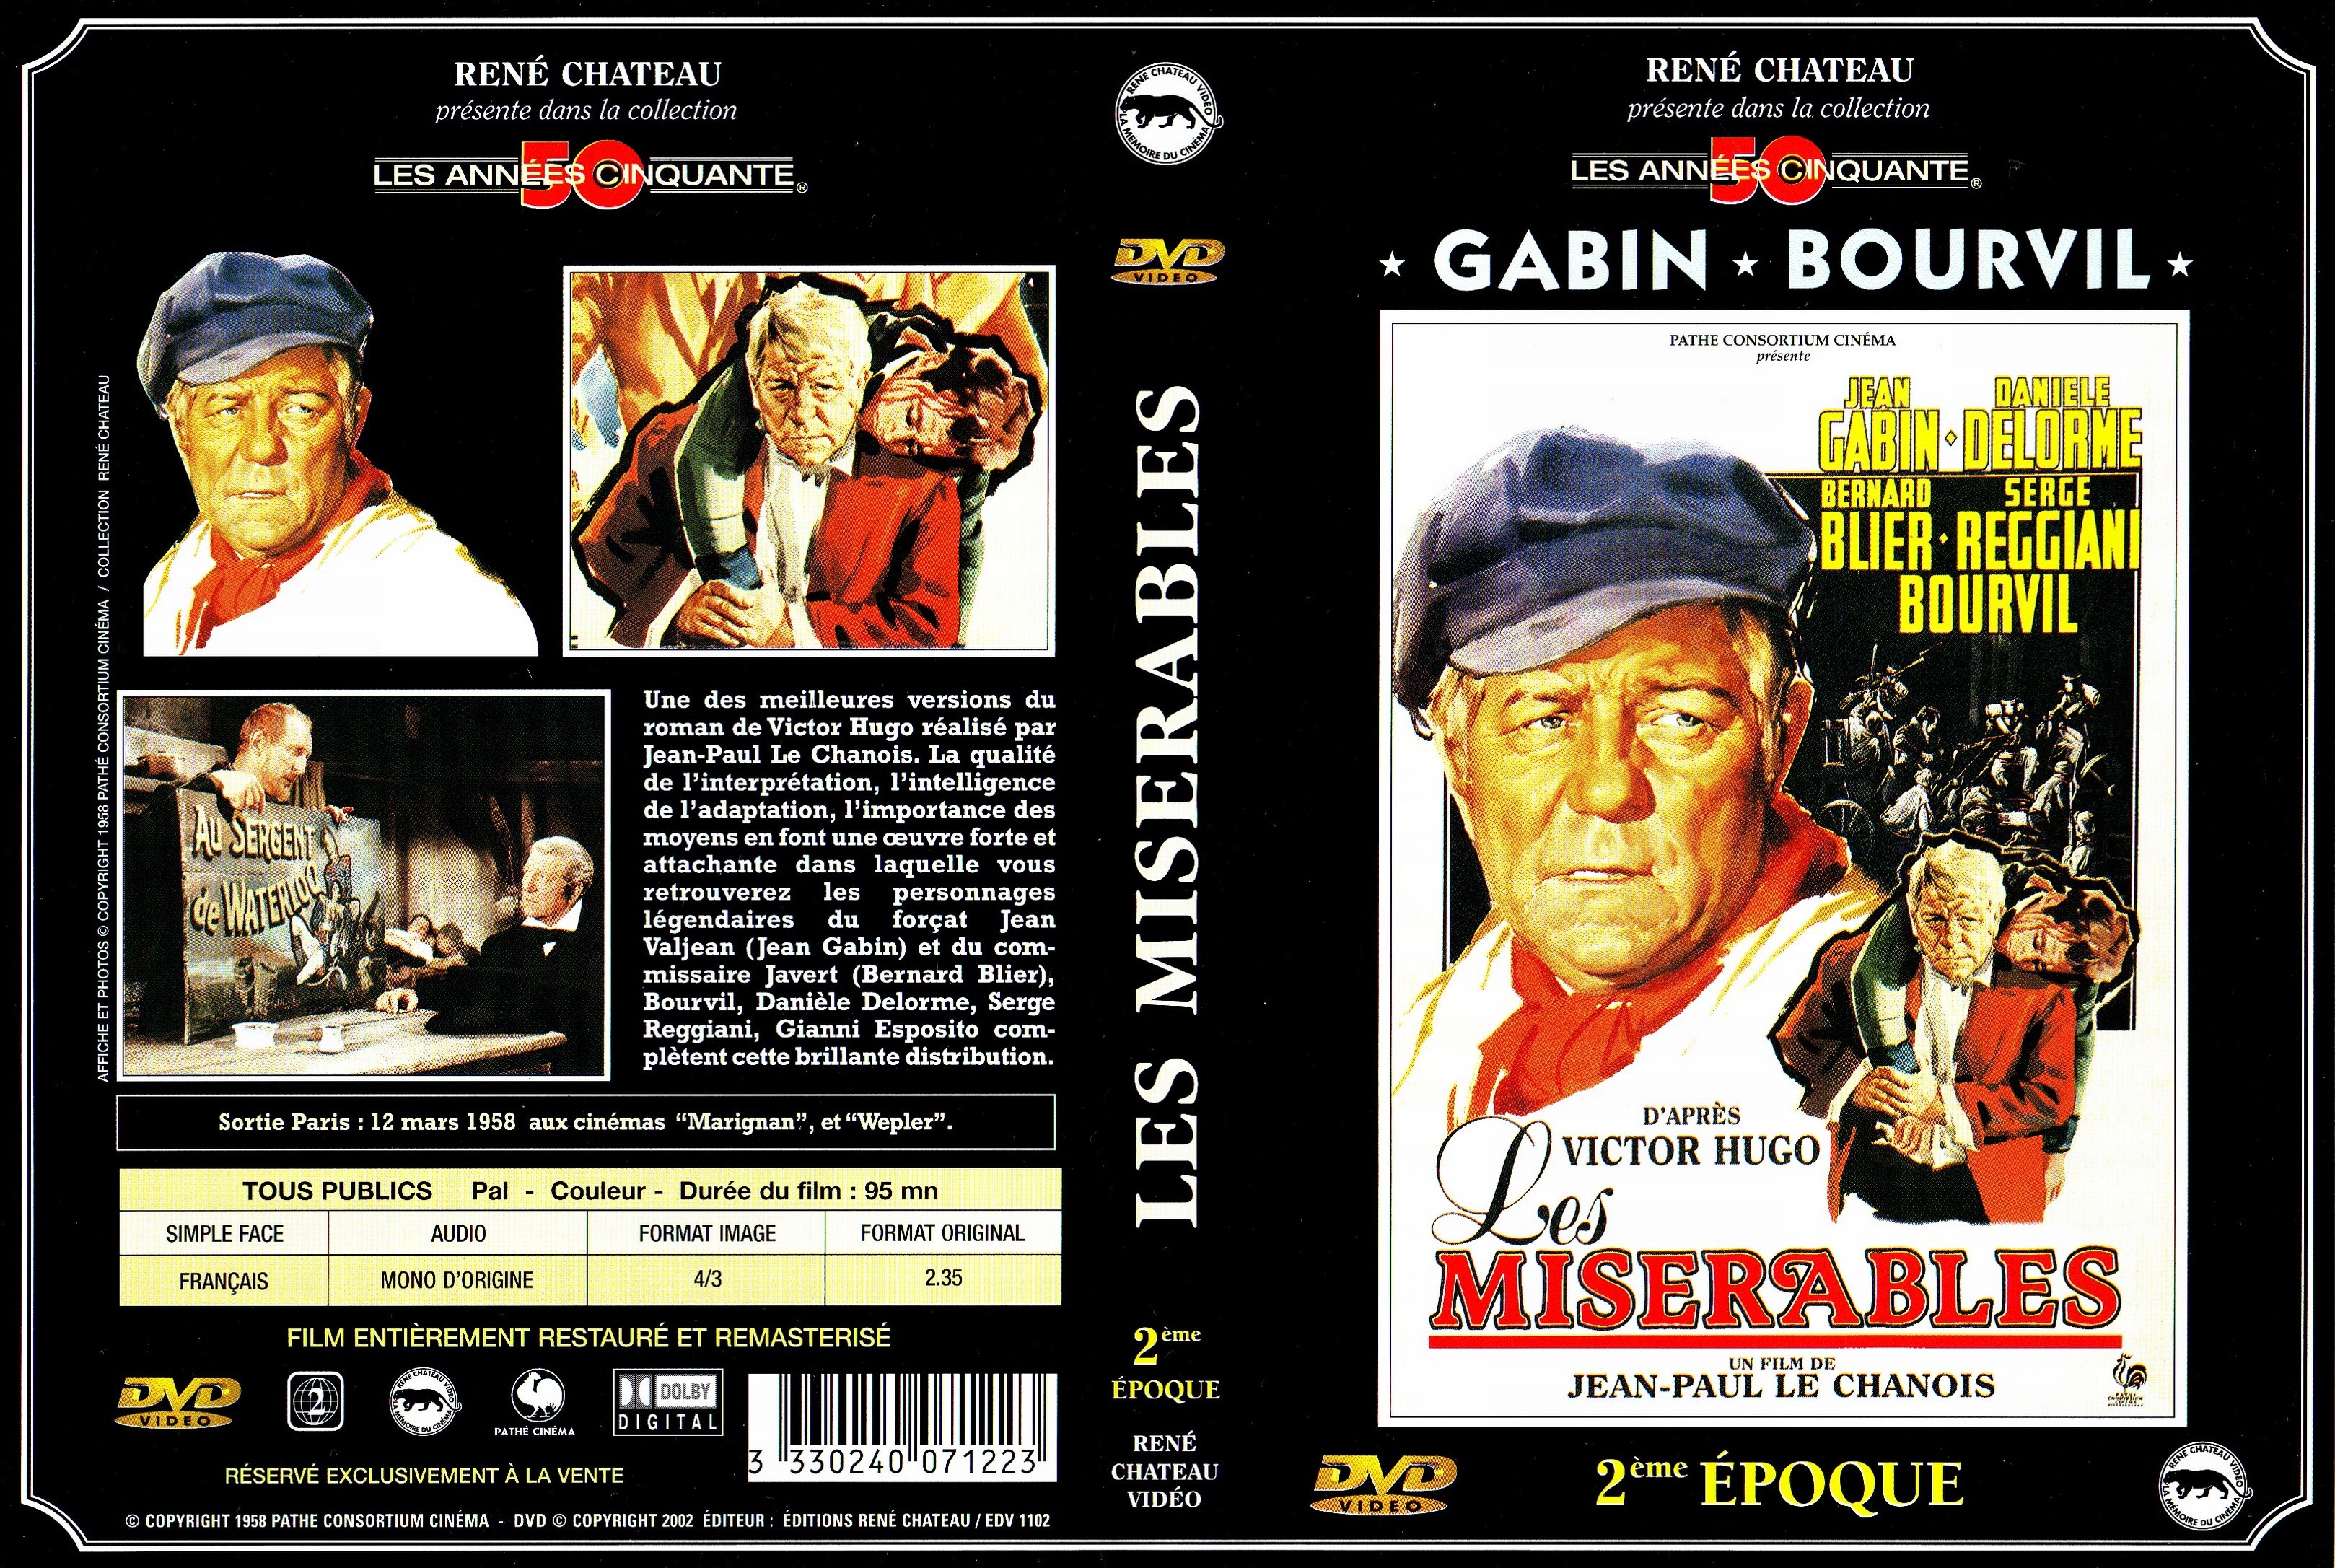 Jaquette DVD Les misrables (Gabin) 2 me poque